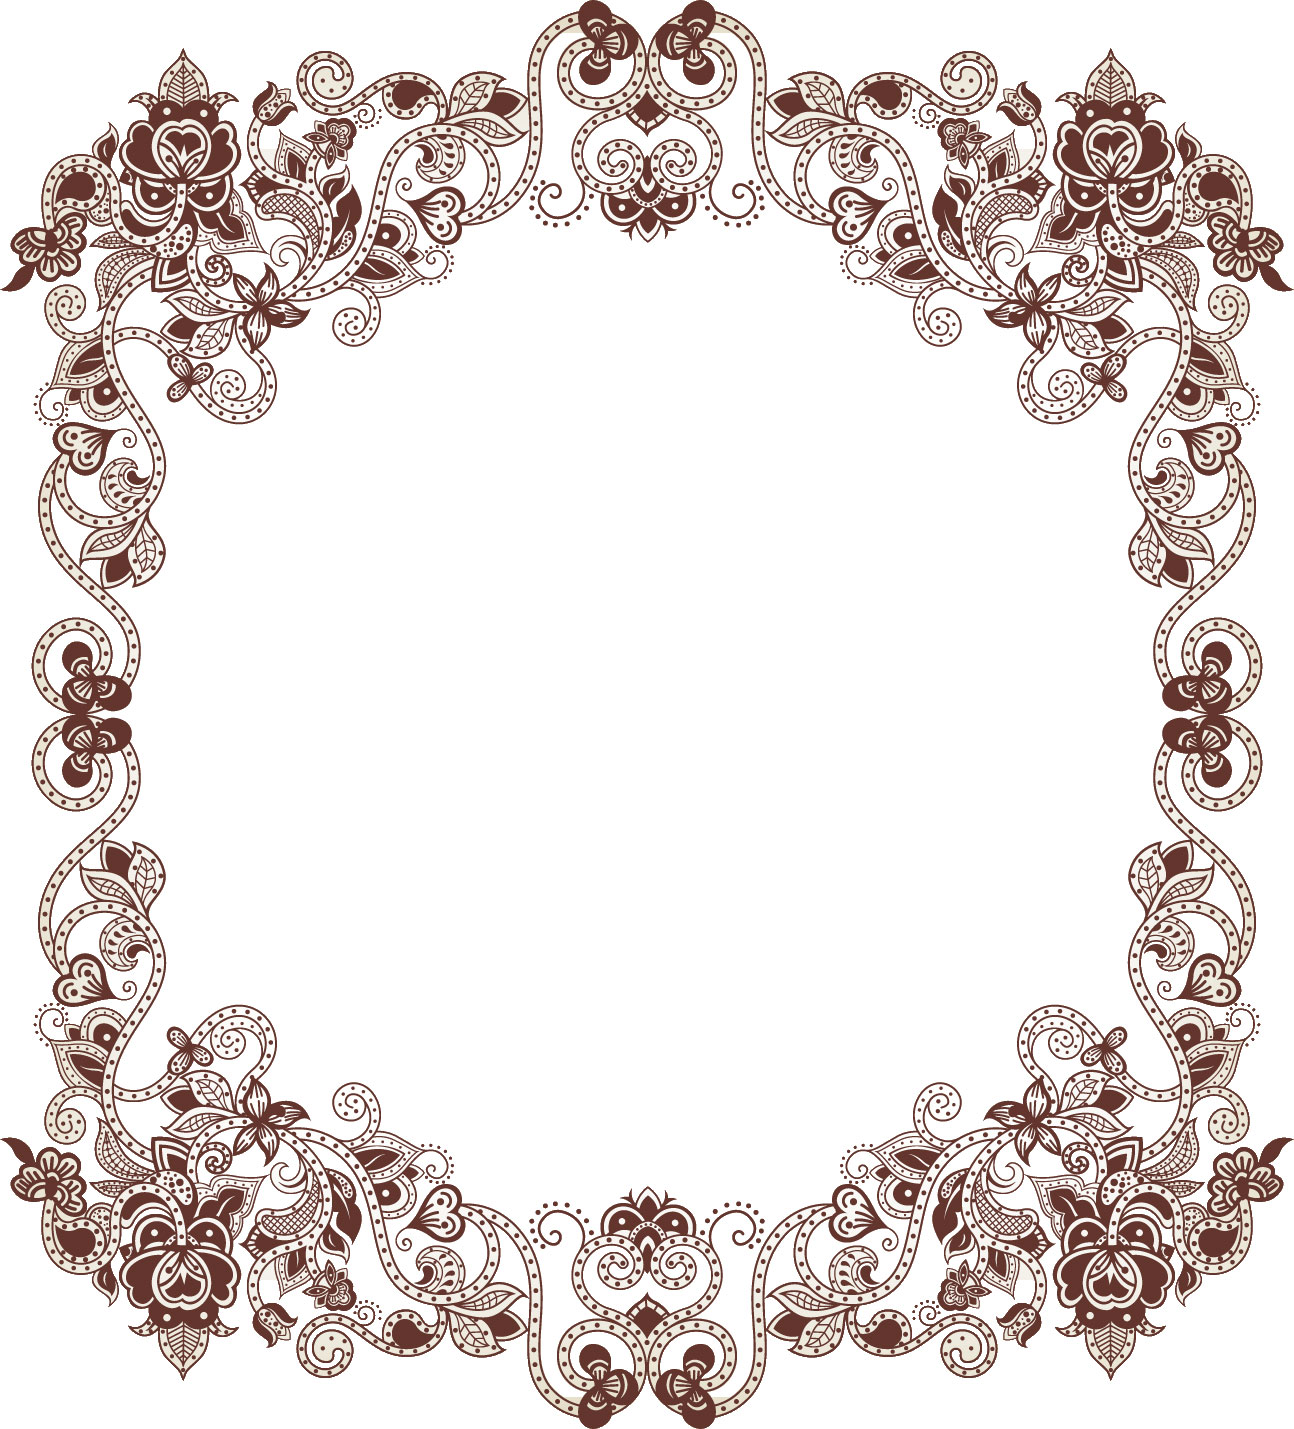 白黒 モノクロの花のイラスト フリー素材 フレーム枠no 781 花と蔦のイメージ